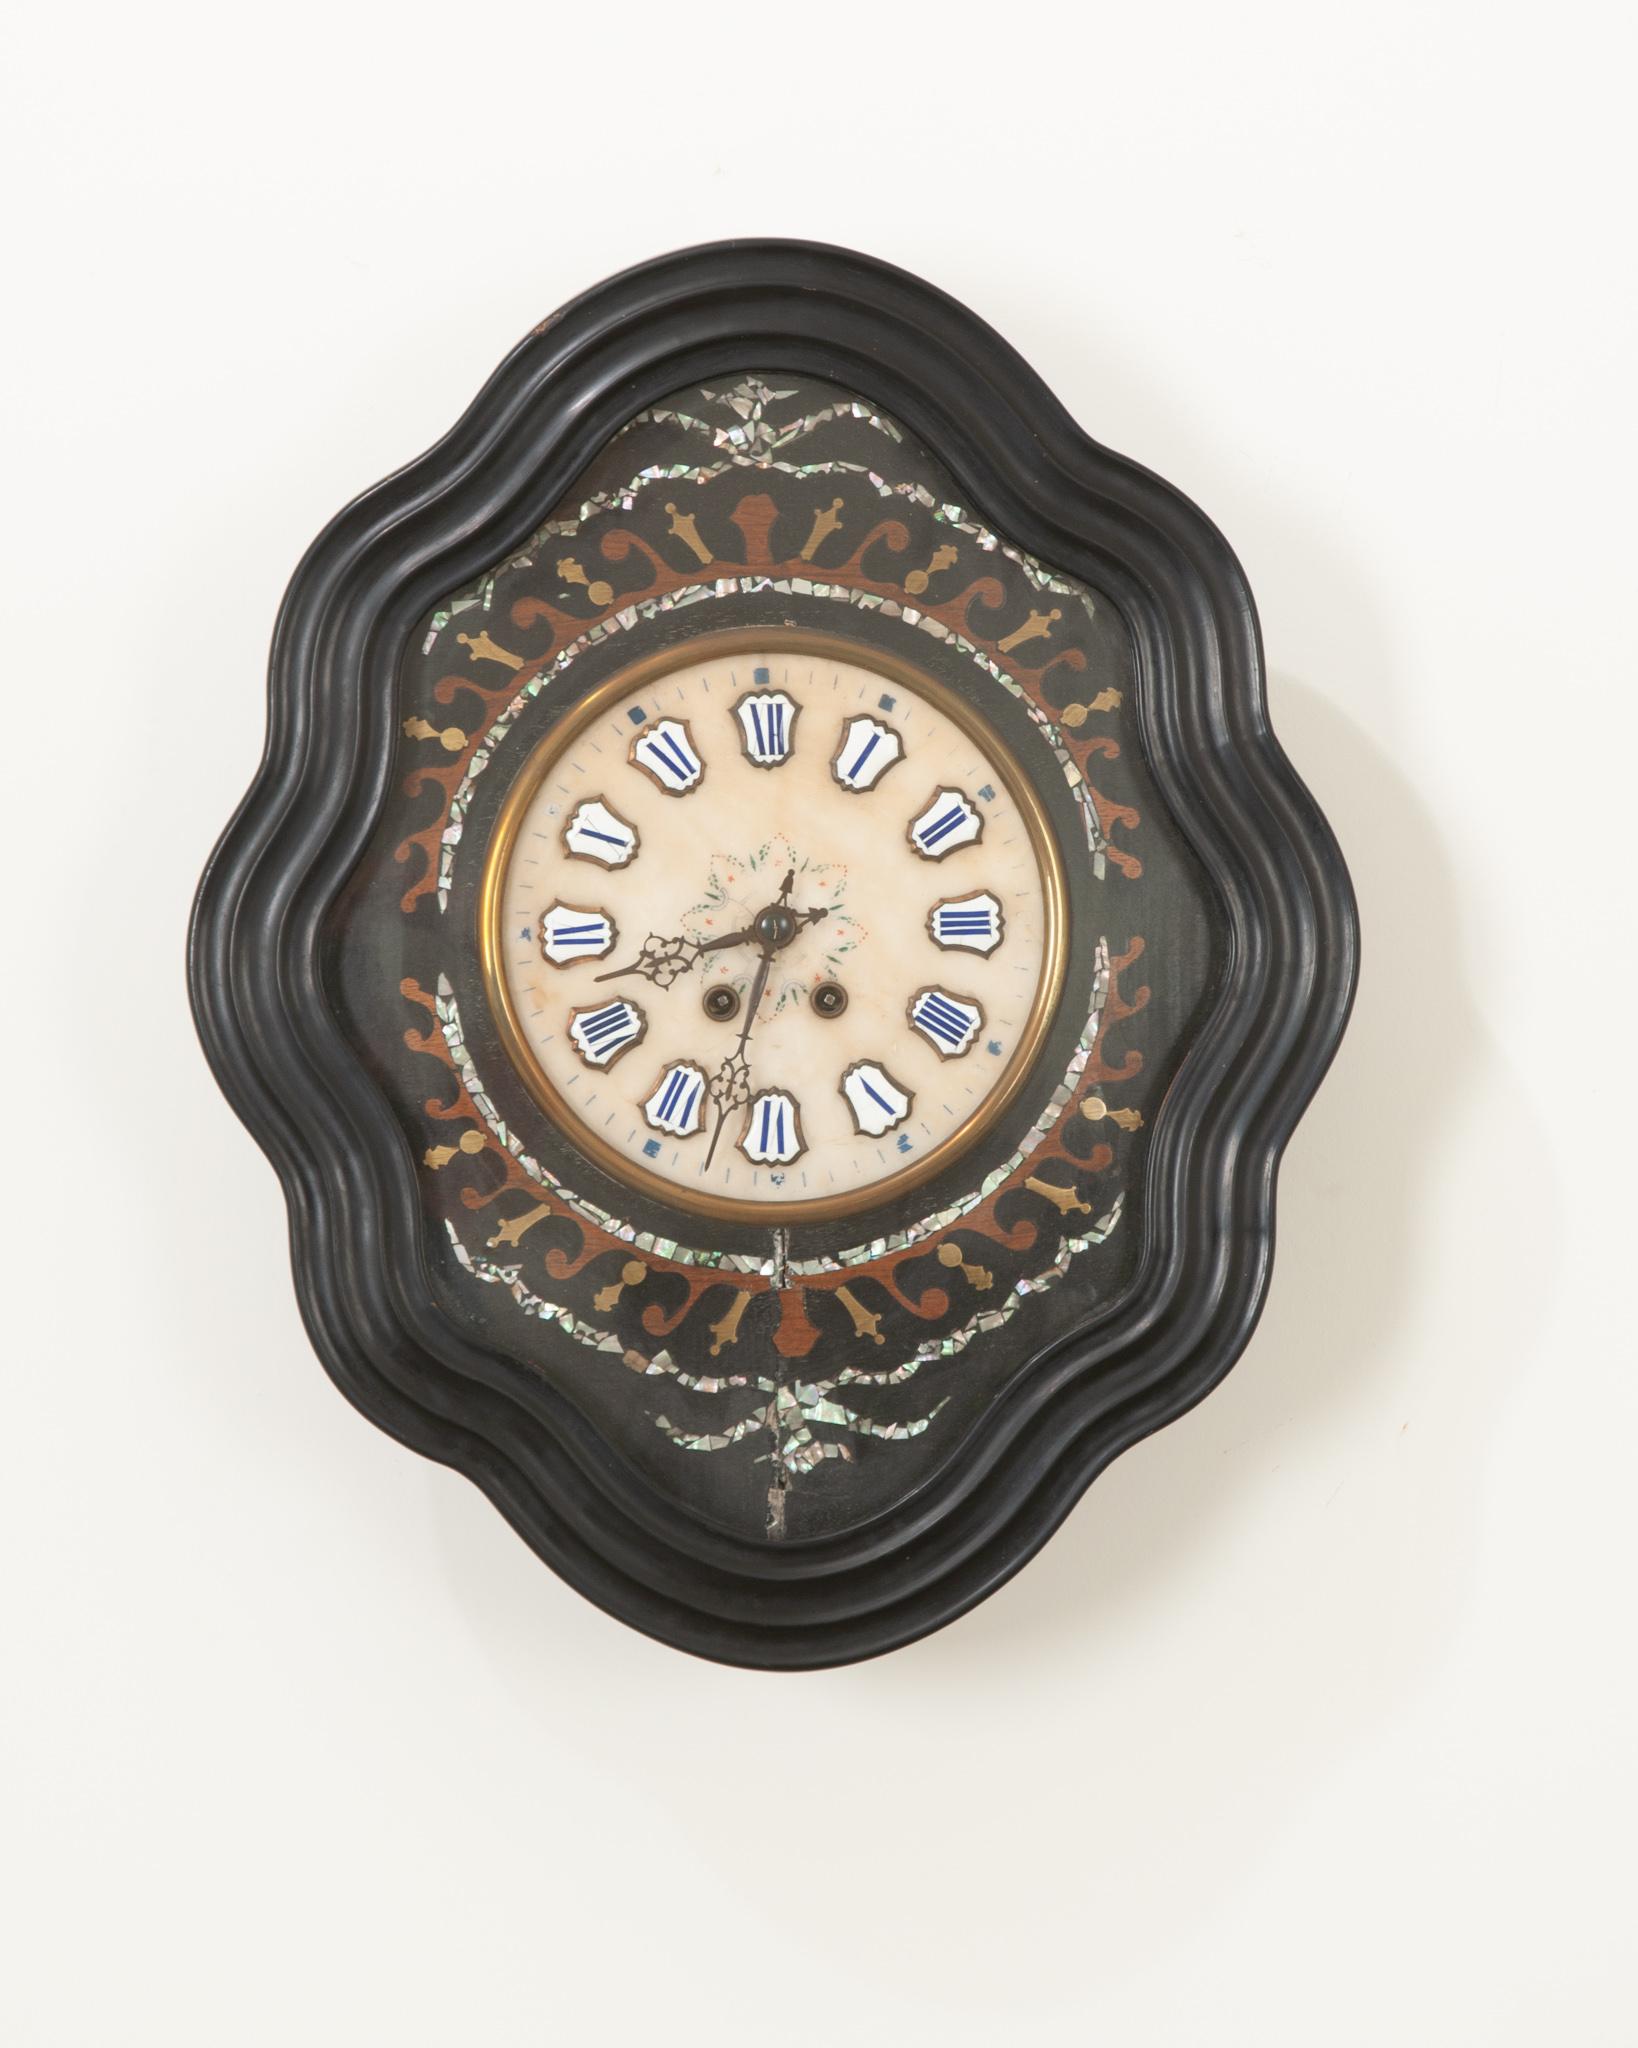 Cette horloge du 19e siècle est étonnante avec son cadre en bois peint à l'ébène en forme de losange ondulé. Des motifs floraux et feuillagés en nacre sont incrustés dans de l'acajou teinté différemment et de la nacre brillante, entourant le cadran